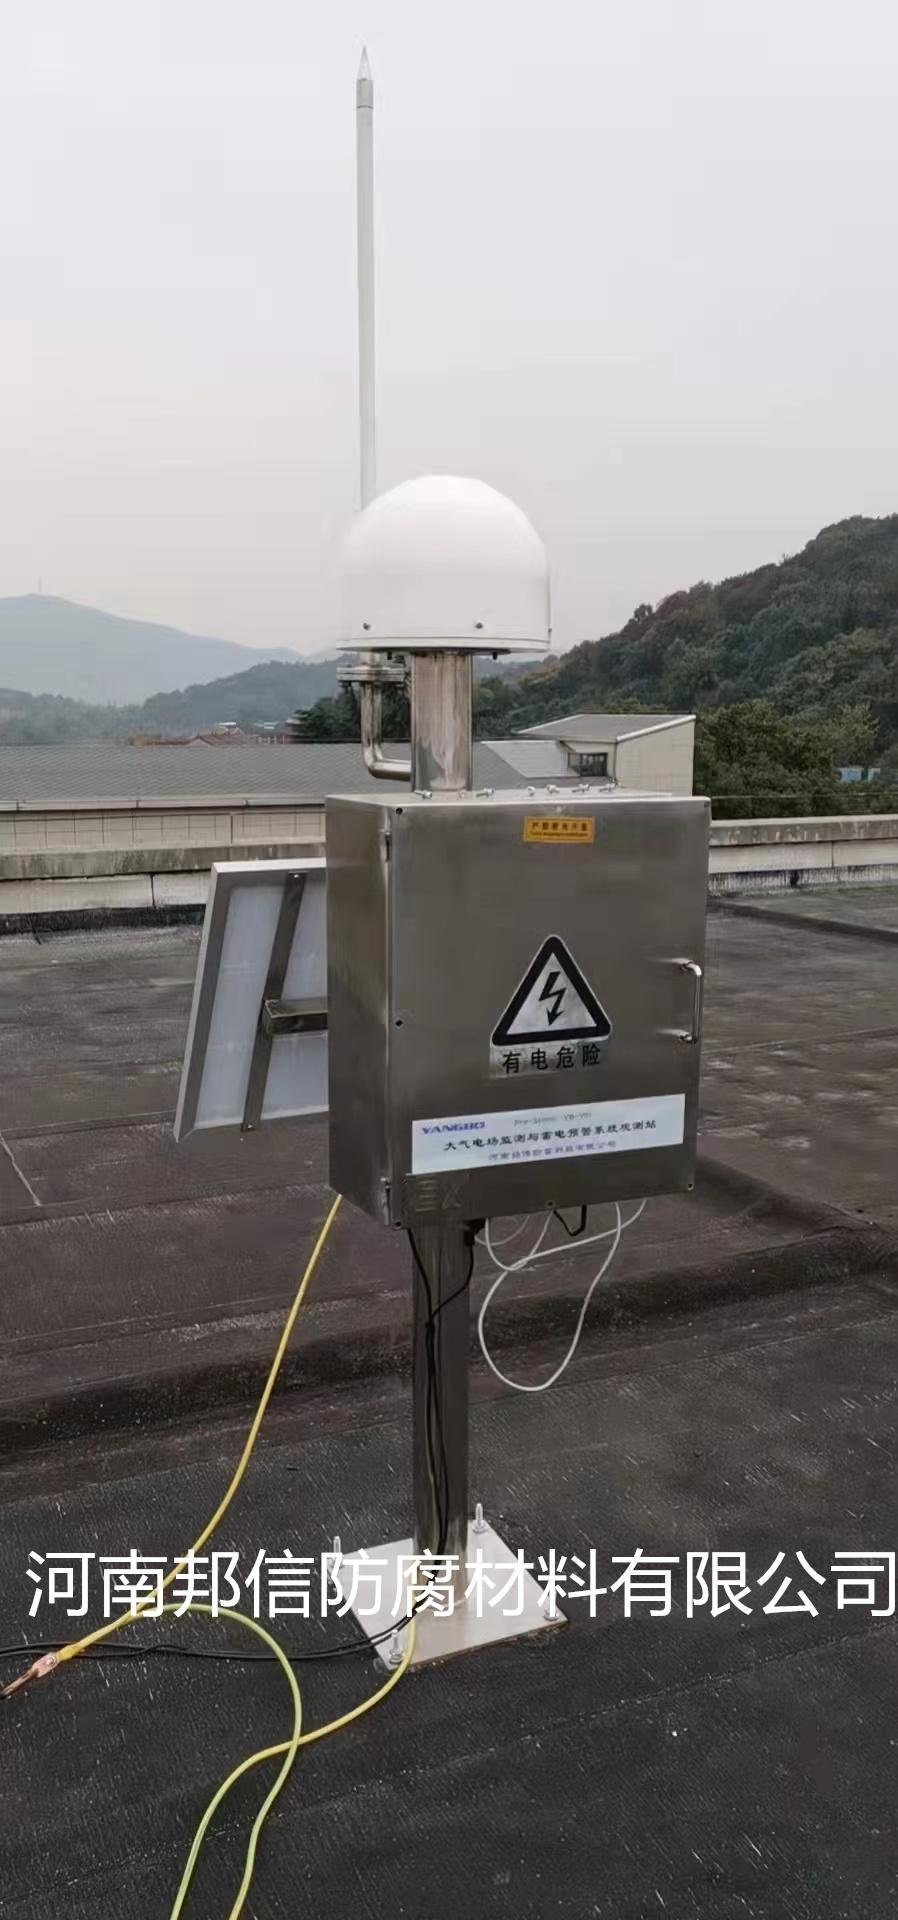 車載式雷電預警系統 機場防雷監測裝置 4